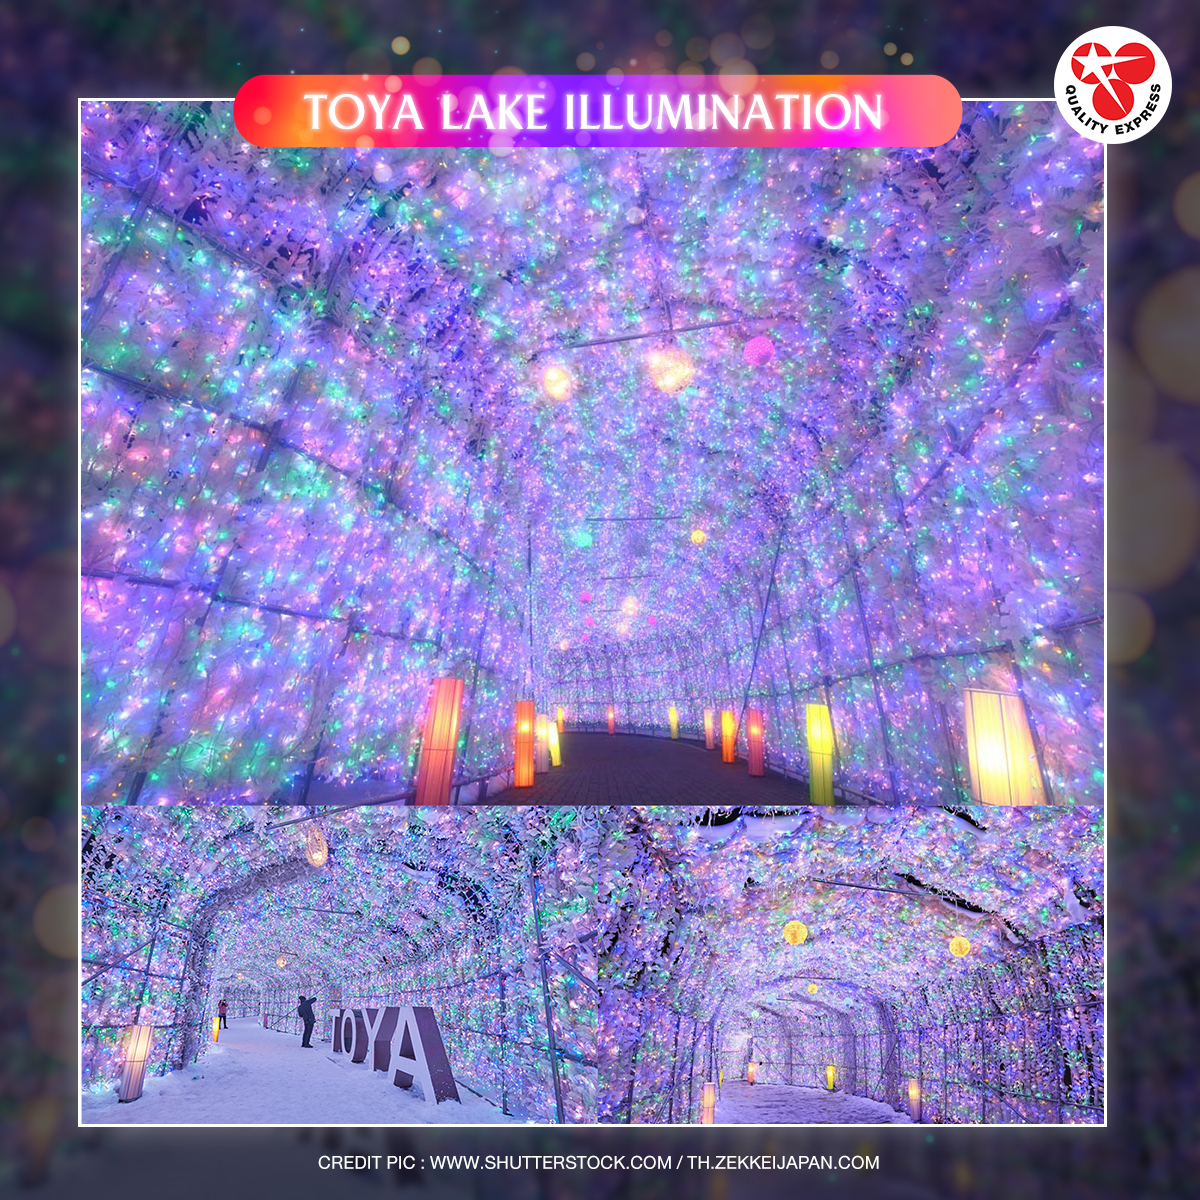 Toya Lake Illumination